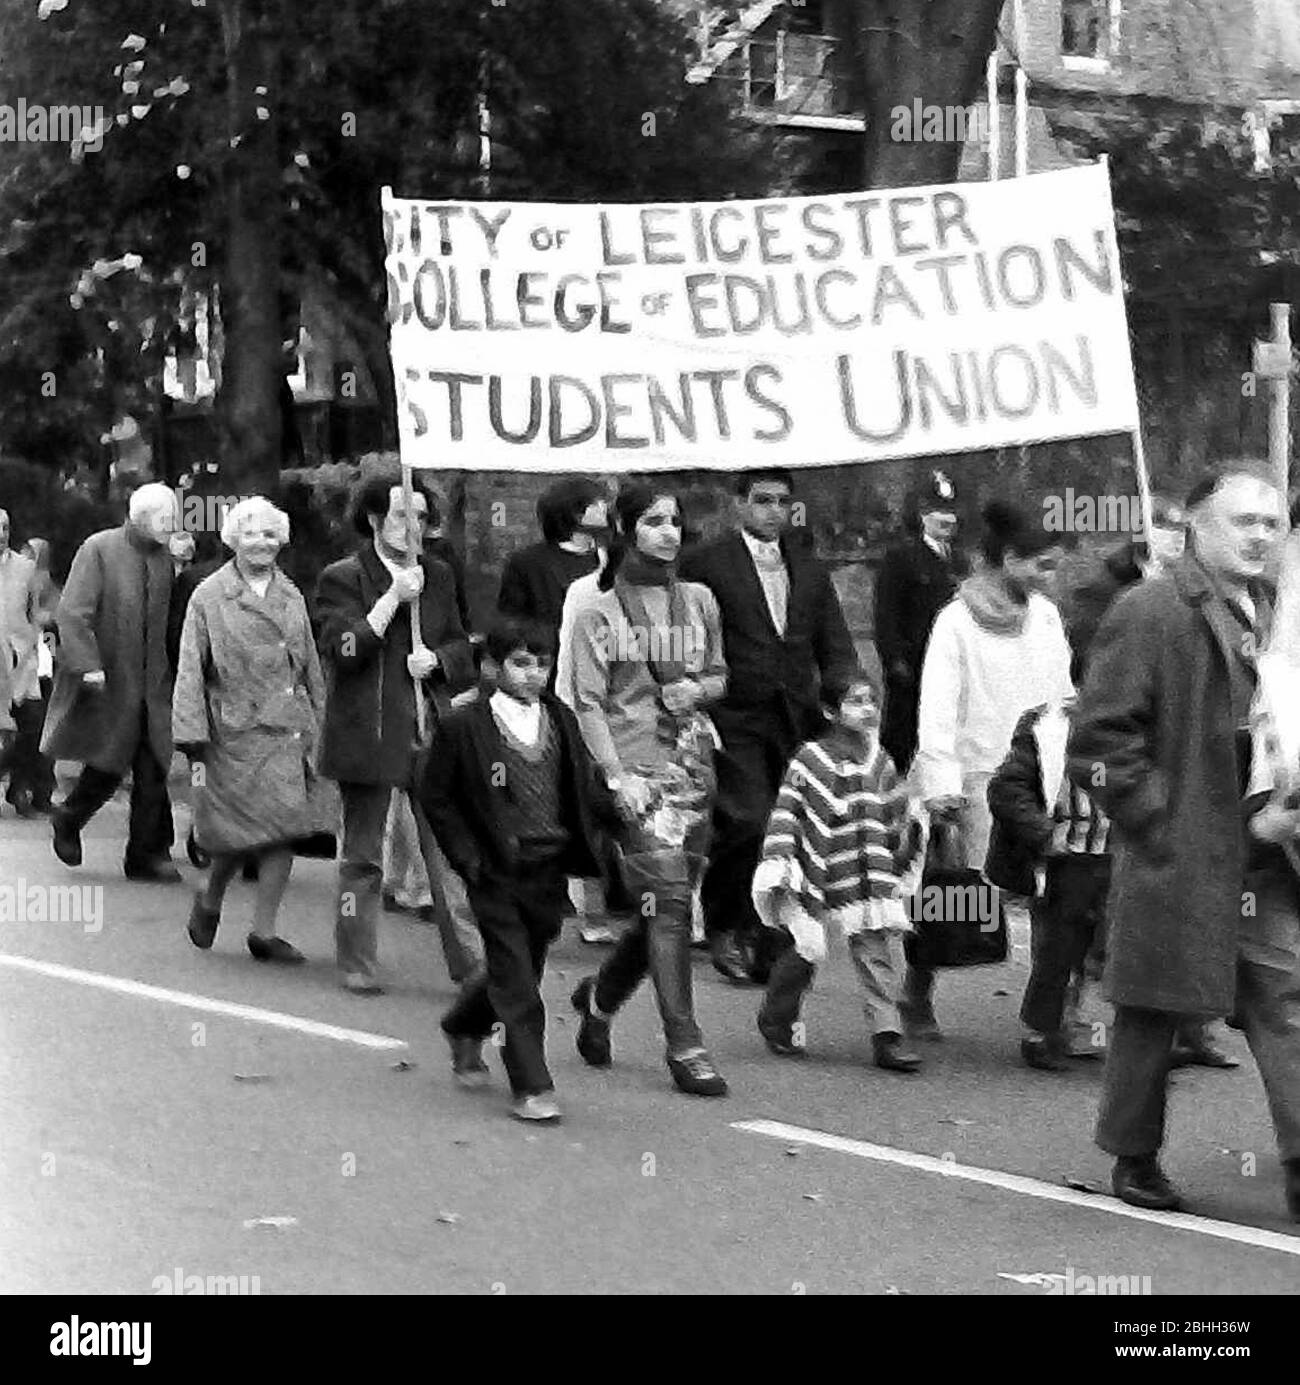 Des manifestants participent à une manifestation contre le racisme à Leicester, en Angleterre, au Royaume-Uni, dans les îles britanniques, en 1972. Leicester College of Education Students Union bannière. Banque D'Images